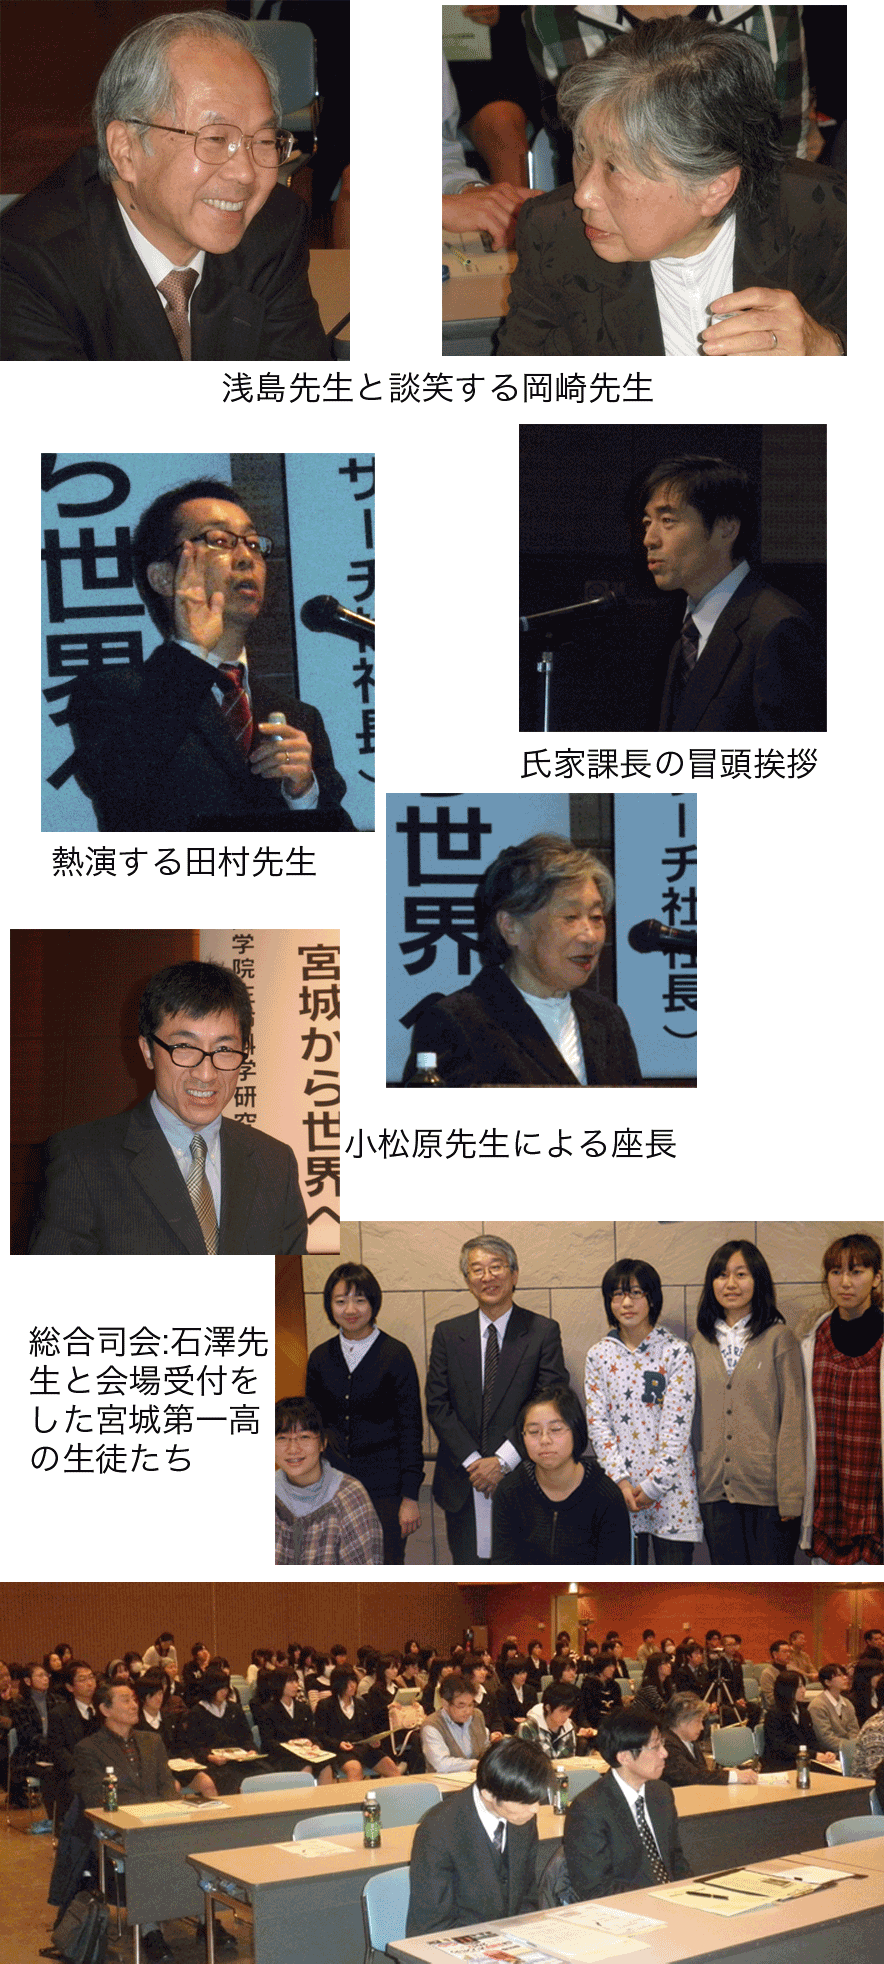 Seminar in Sendai